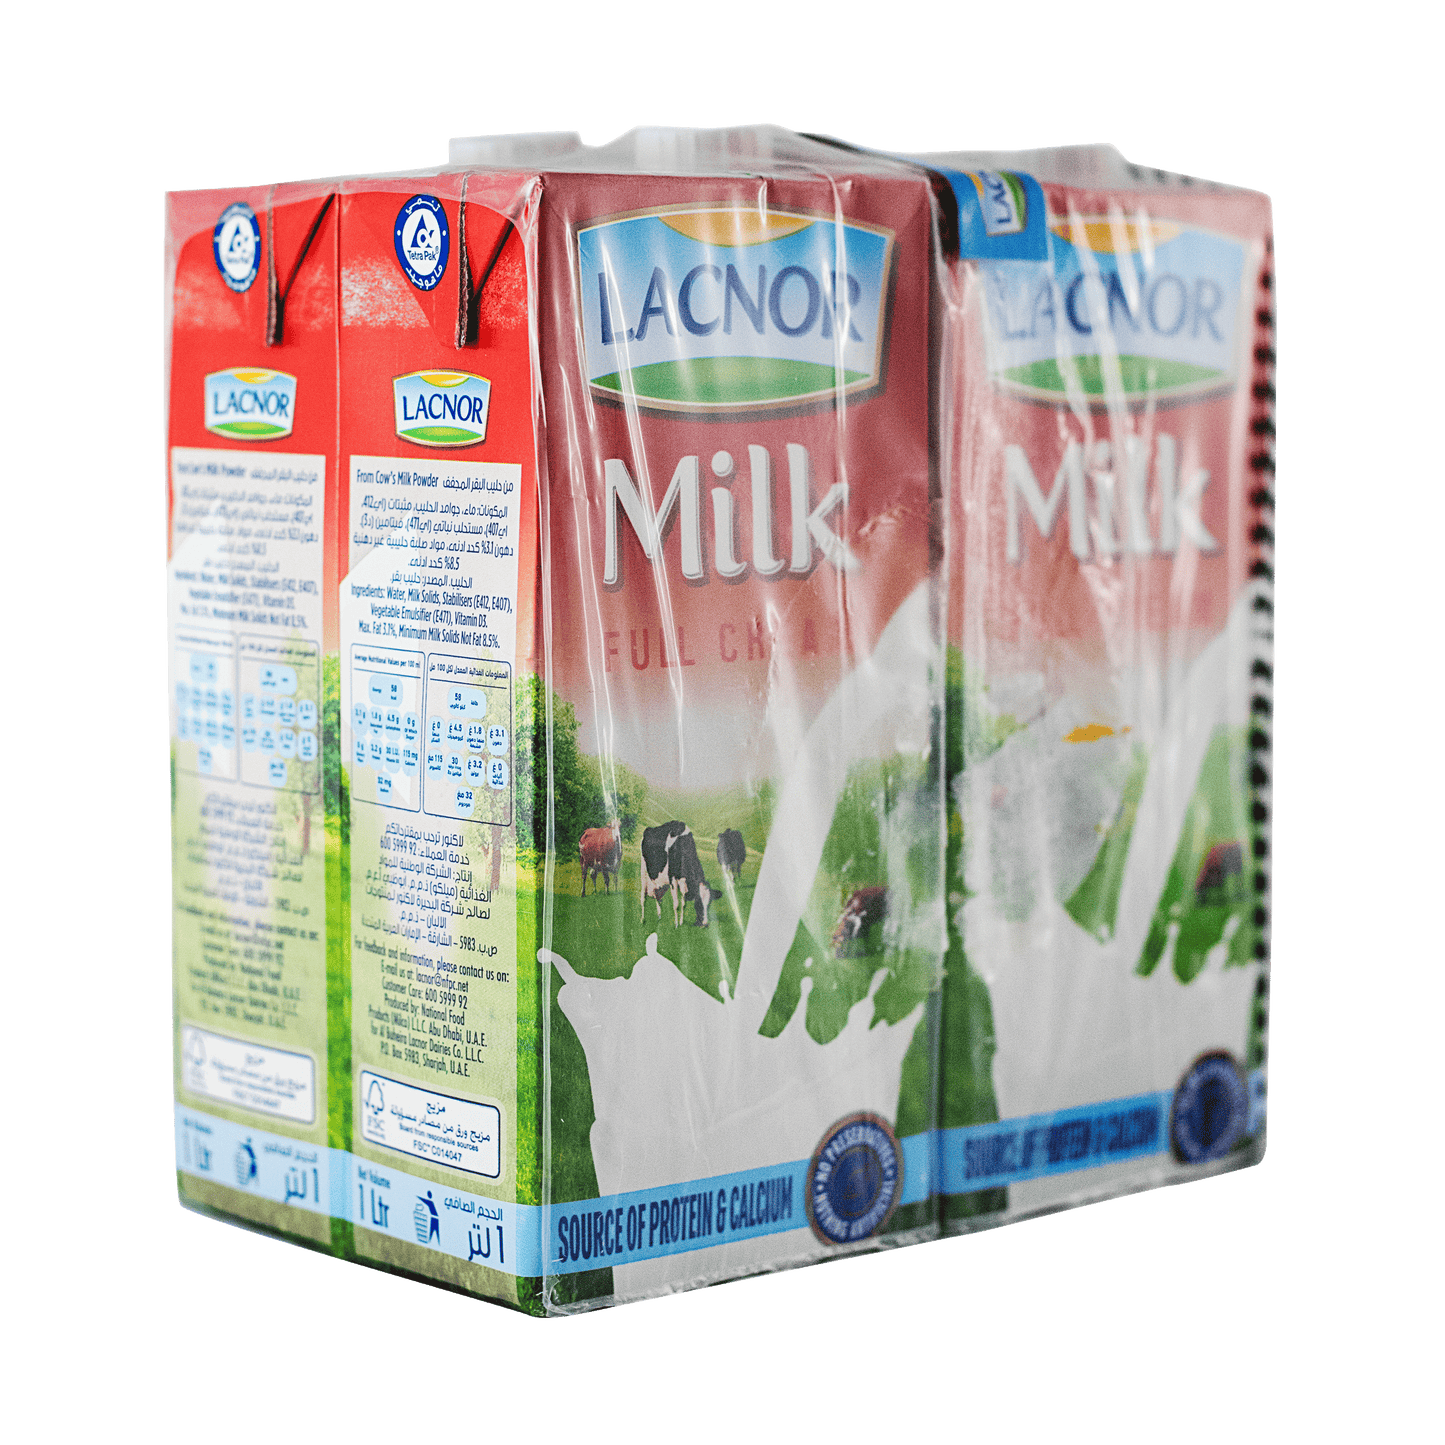 Lacnor Milk Full Cream (4 x 1L)